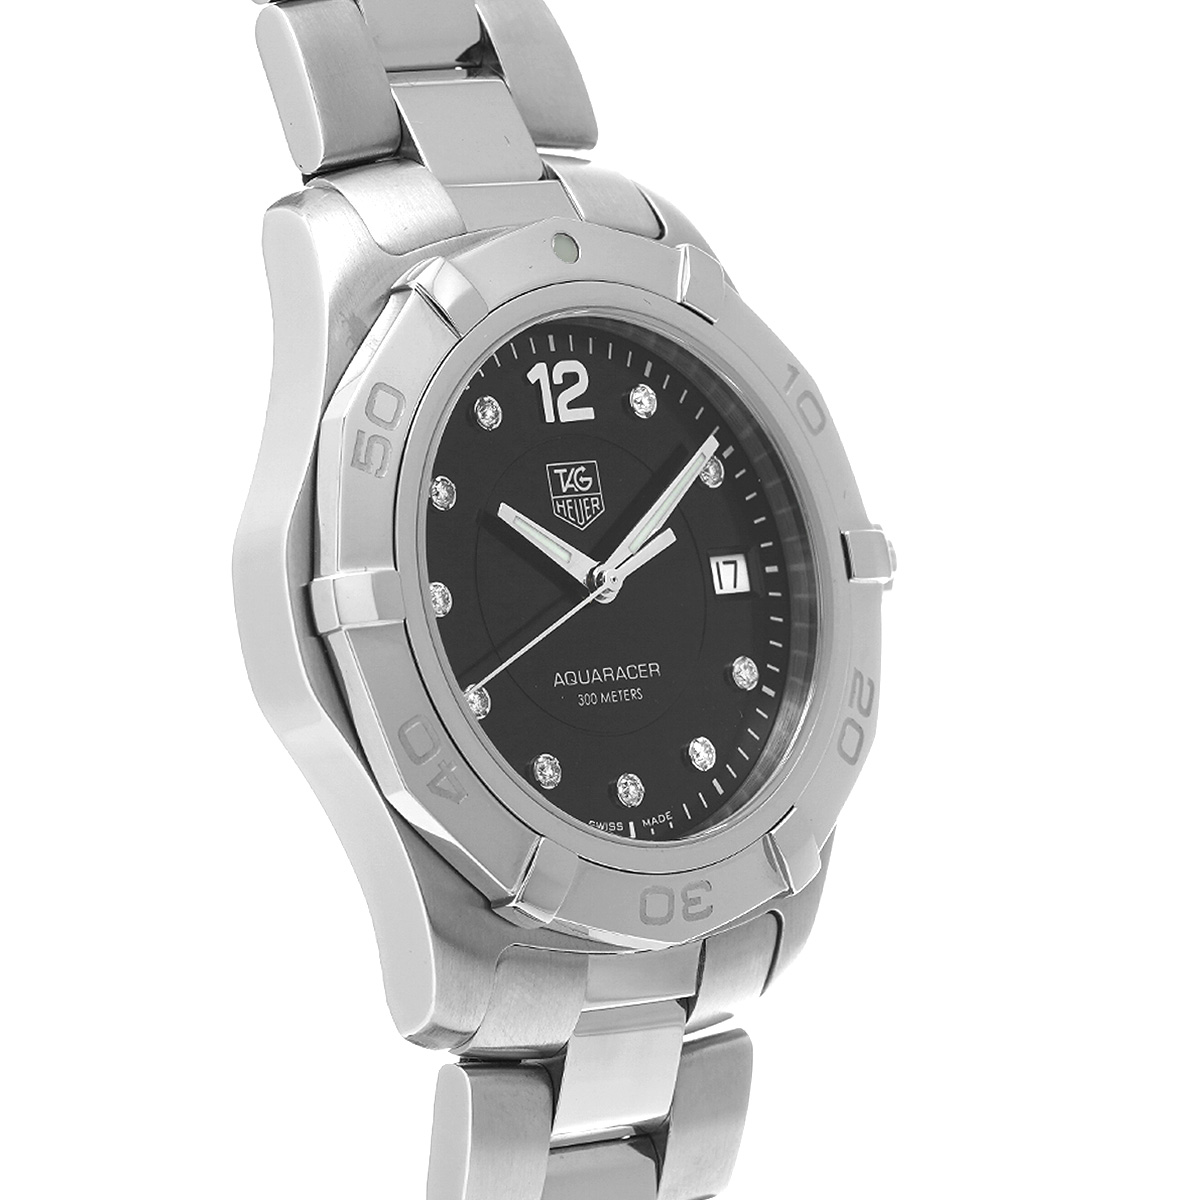 タグ ホイヤー TAG HEUER WAF111C.BA0810 ブラック /ダイヤモンド メンズ 腕時計